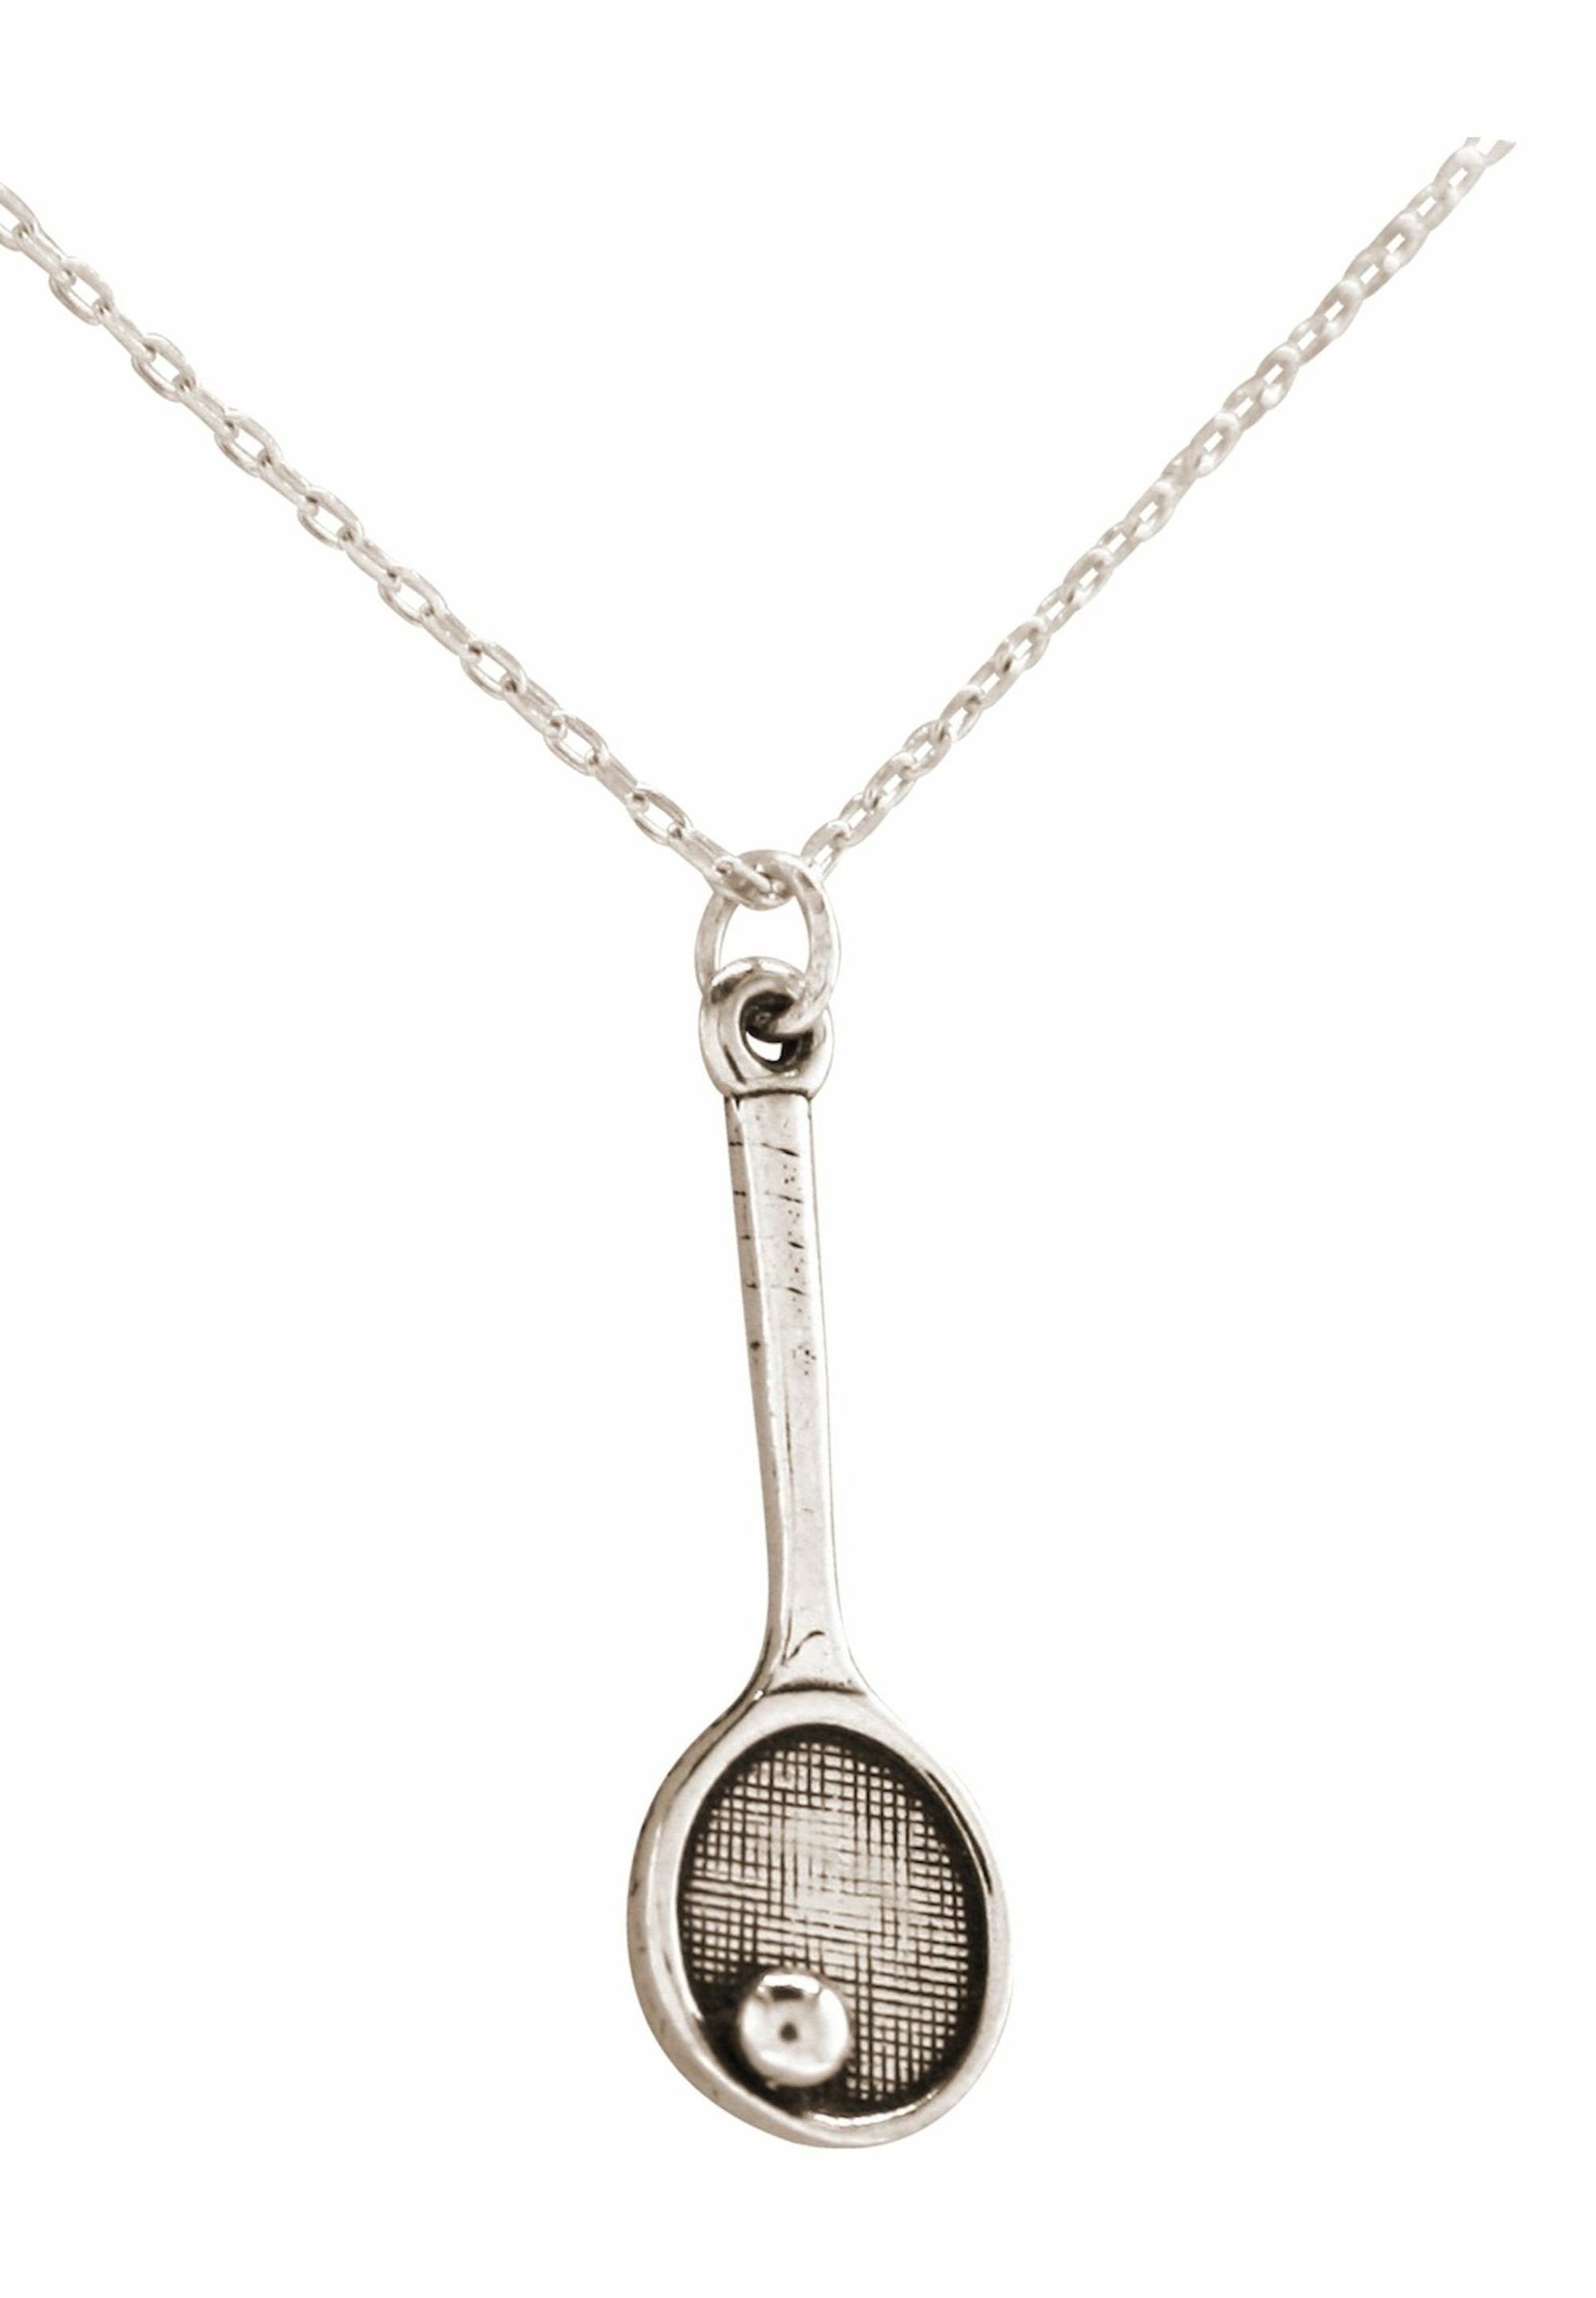 Racket Anhänger Gemshine Tennisschläger - Sportschmuck coloured silver Kette Ball mit